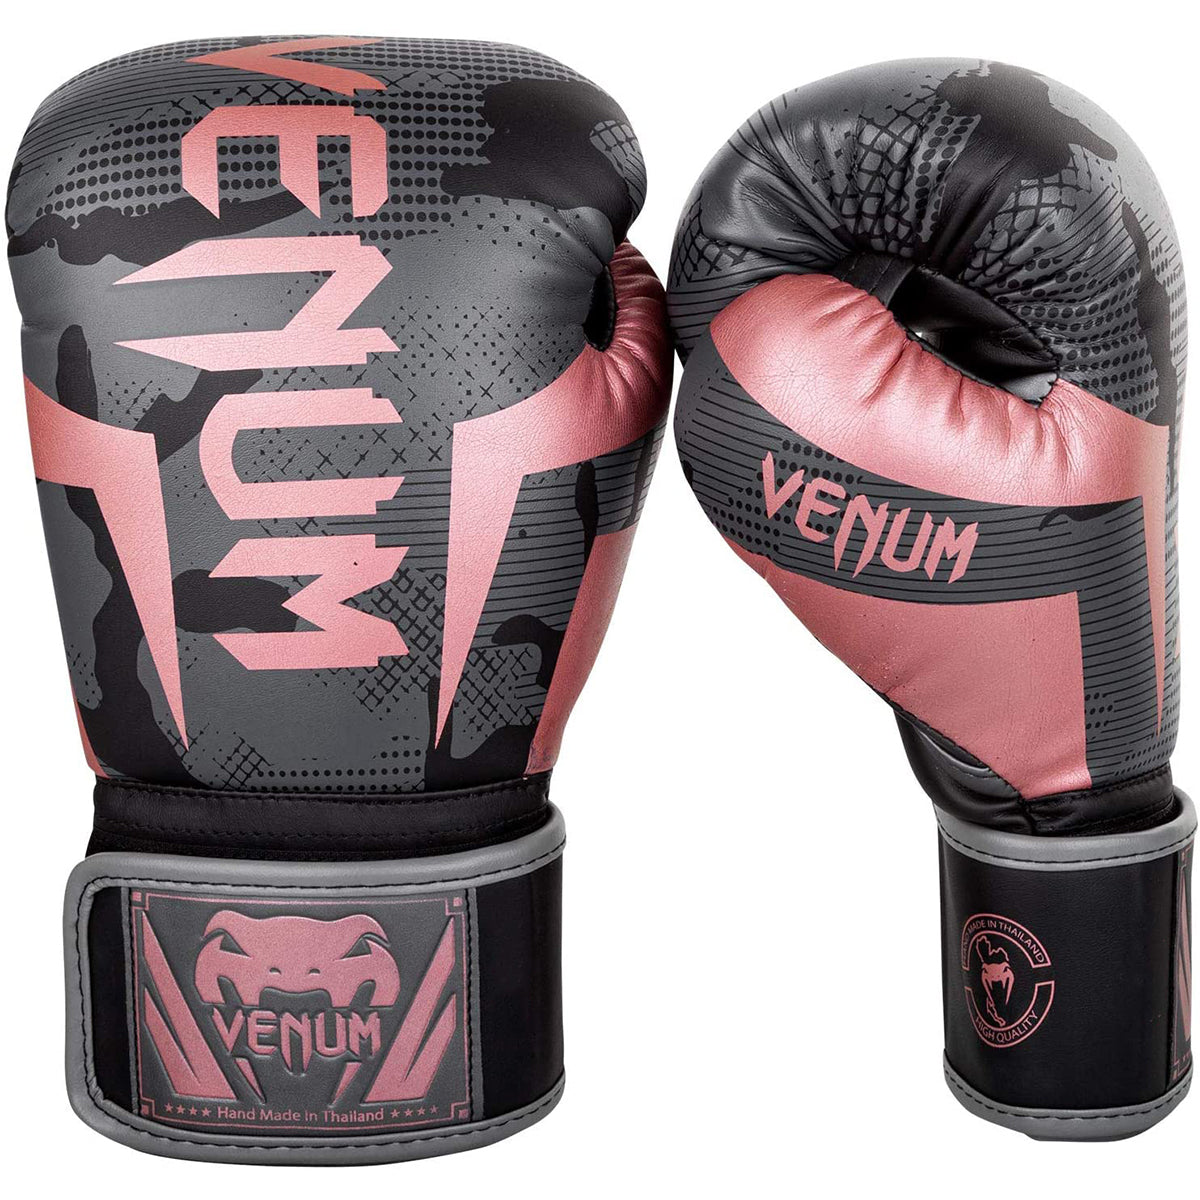 Venum Elite Boxing Gloves - Black/Pink Gold 14 oz